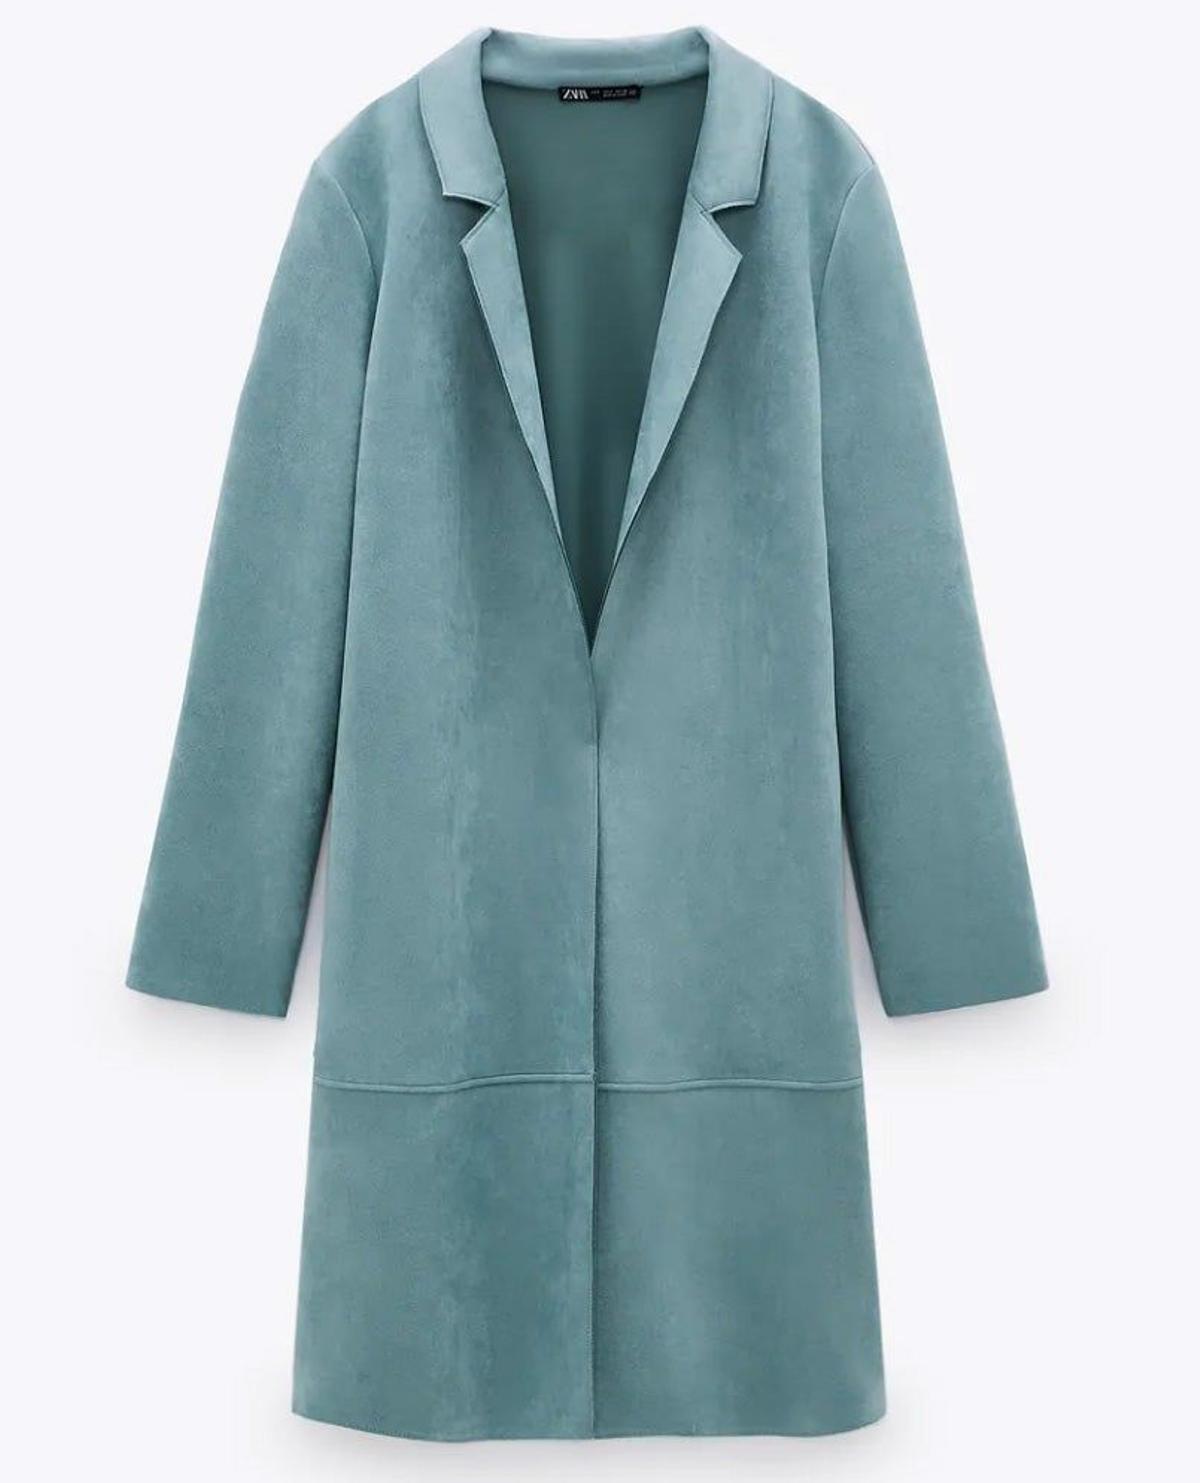 Abrigo efecto ante en azul claro de Zara. (Precio: 29,95 euros)